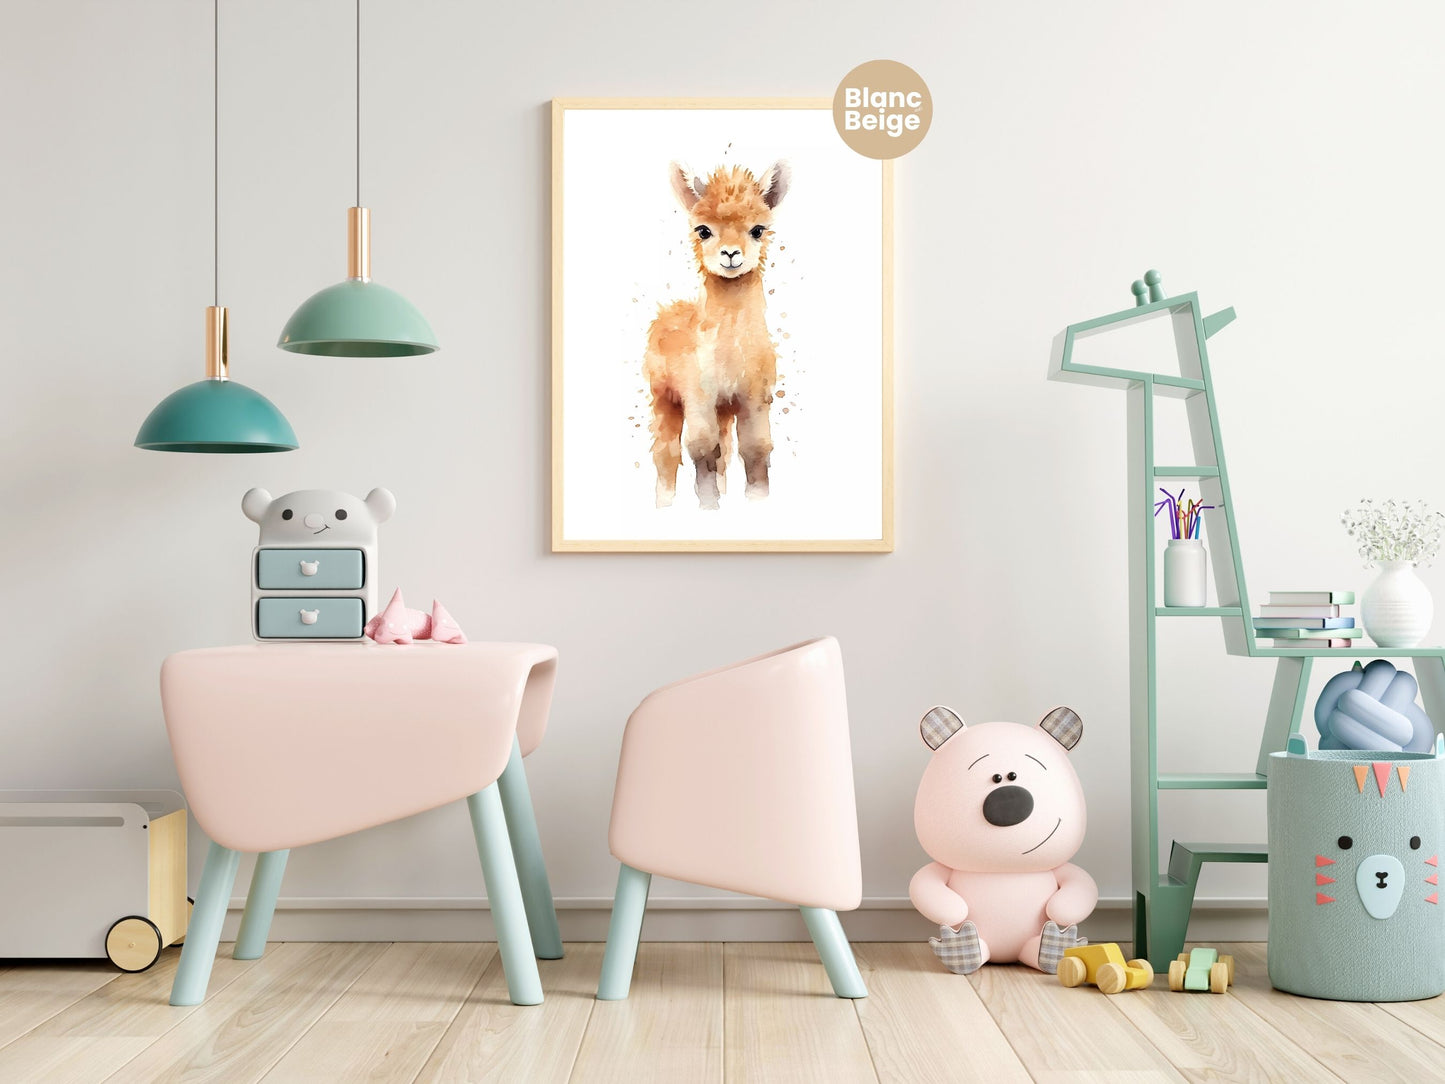 Baby Alpaca Watercolor: Farm Animal Art Collection